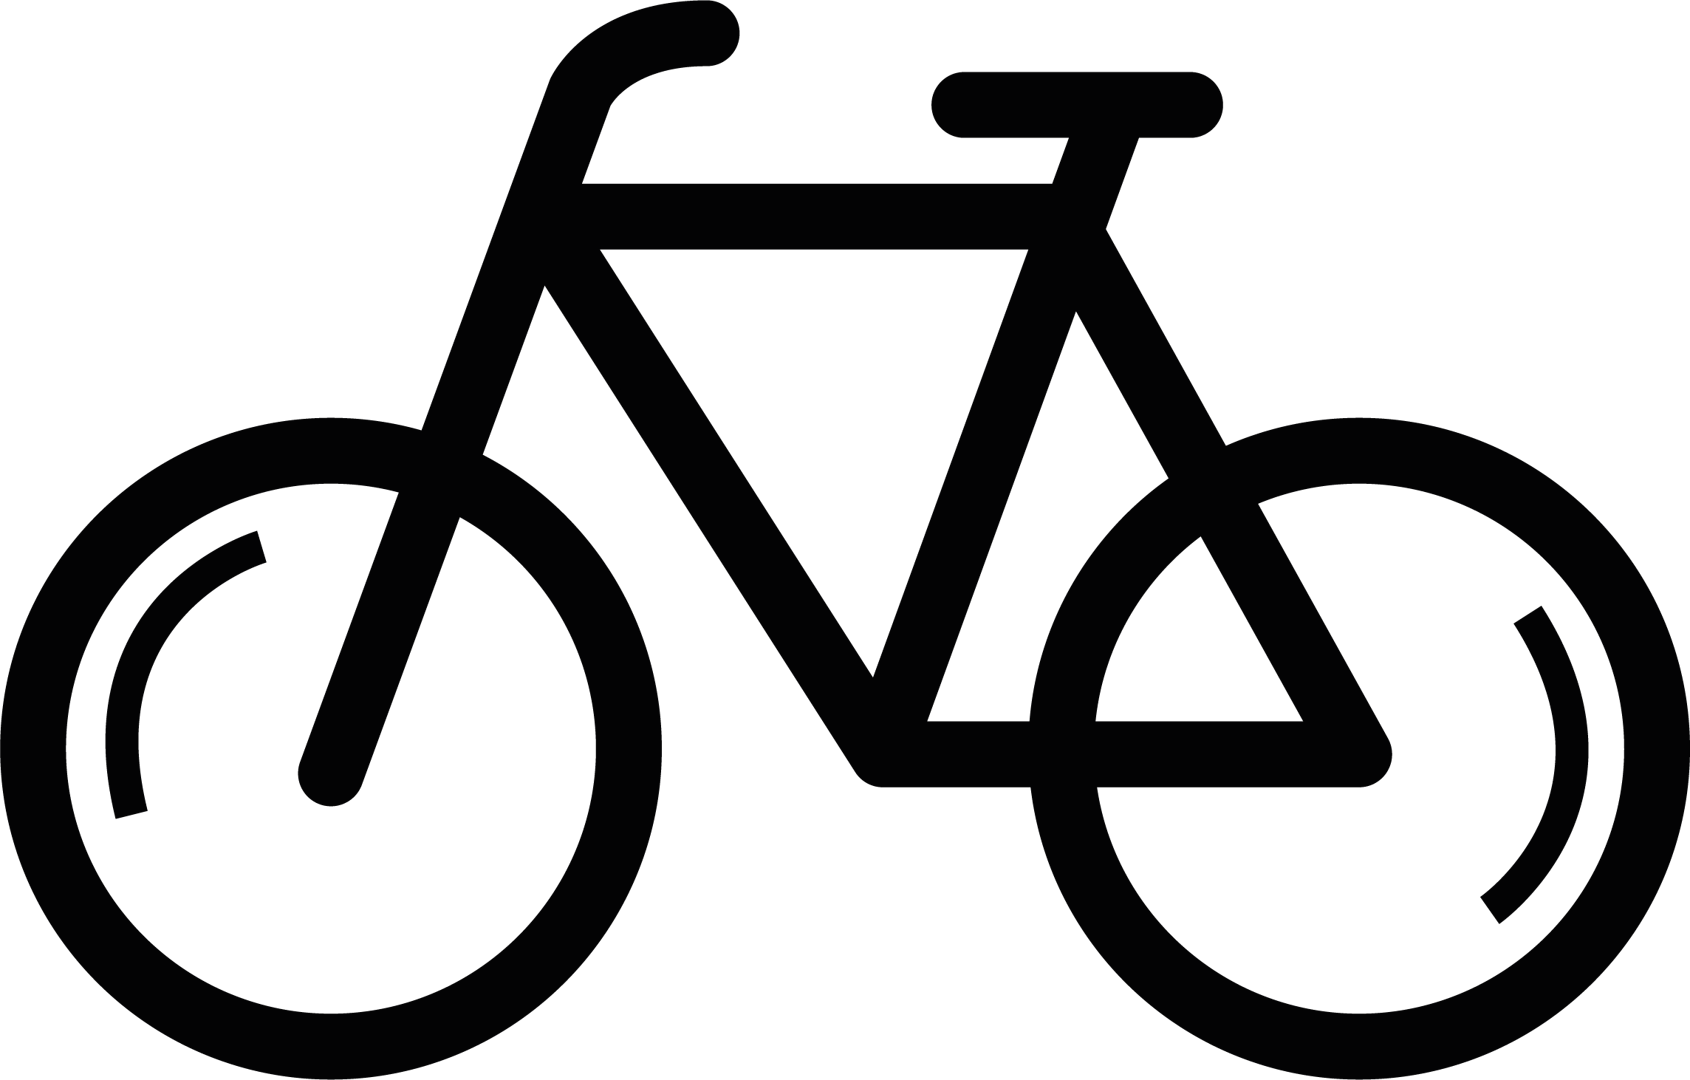 Piktogram von einem Fahrrad